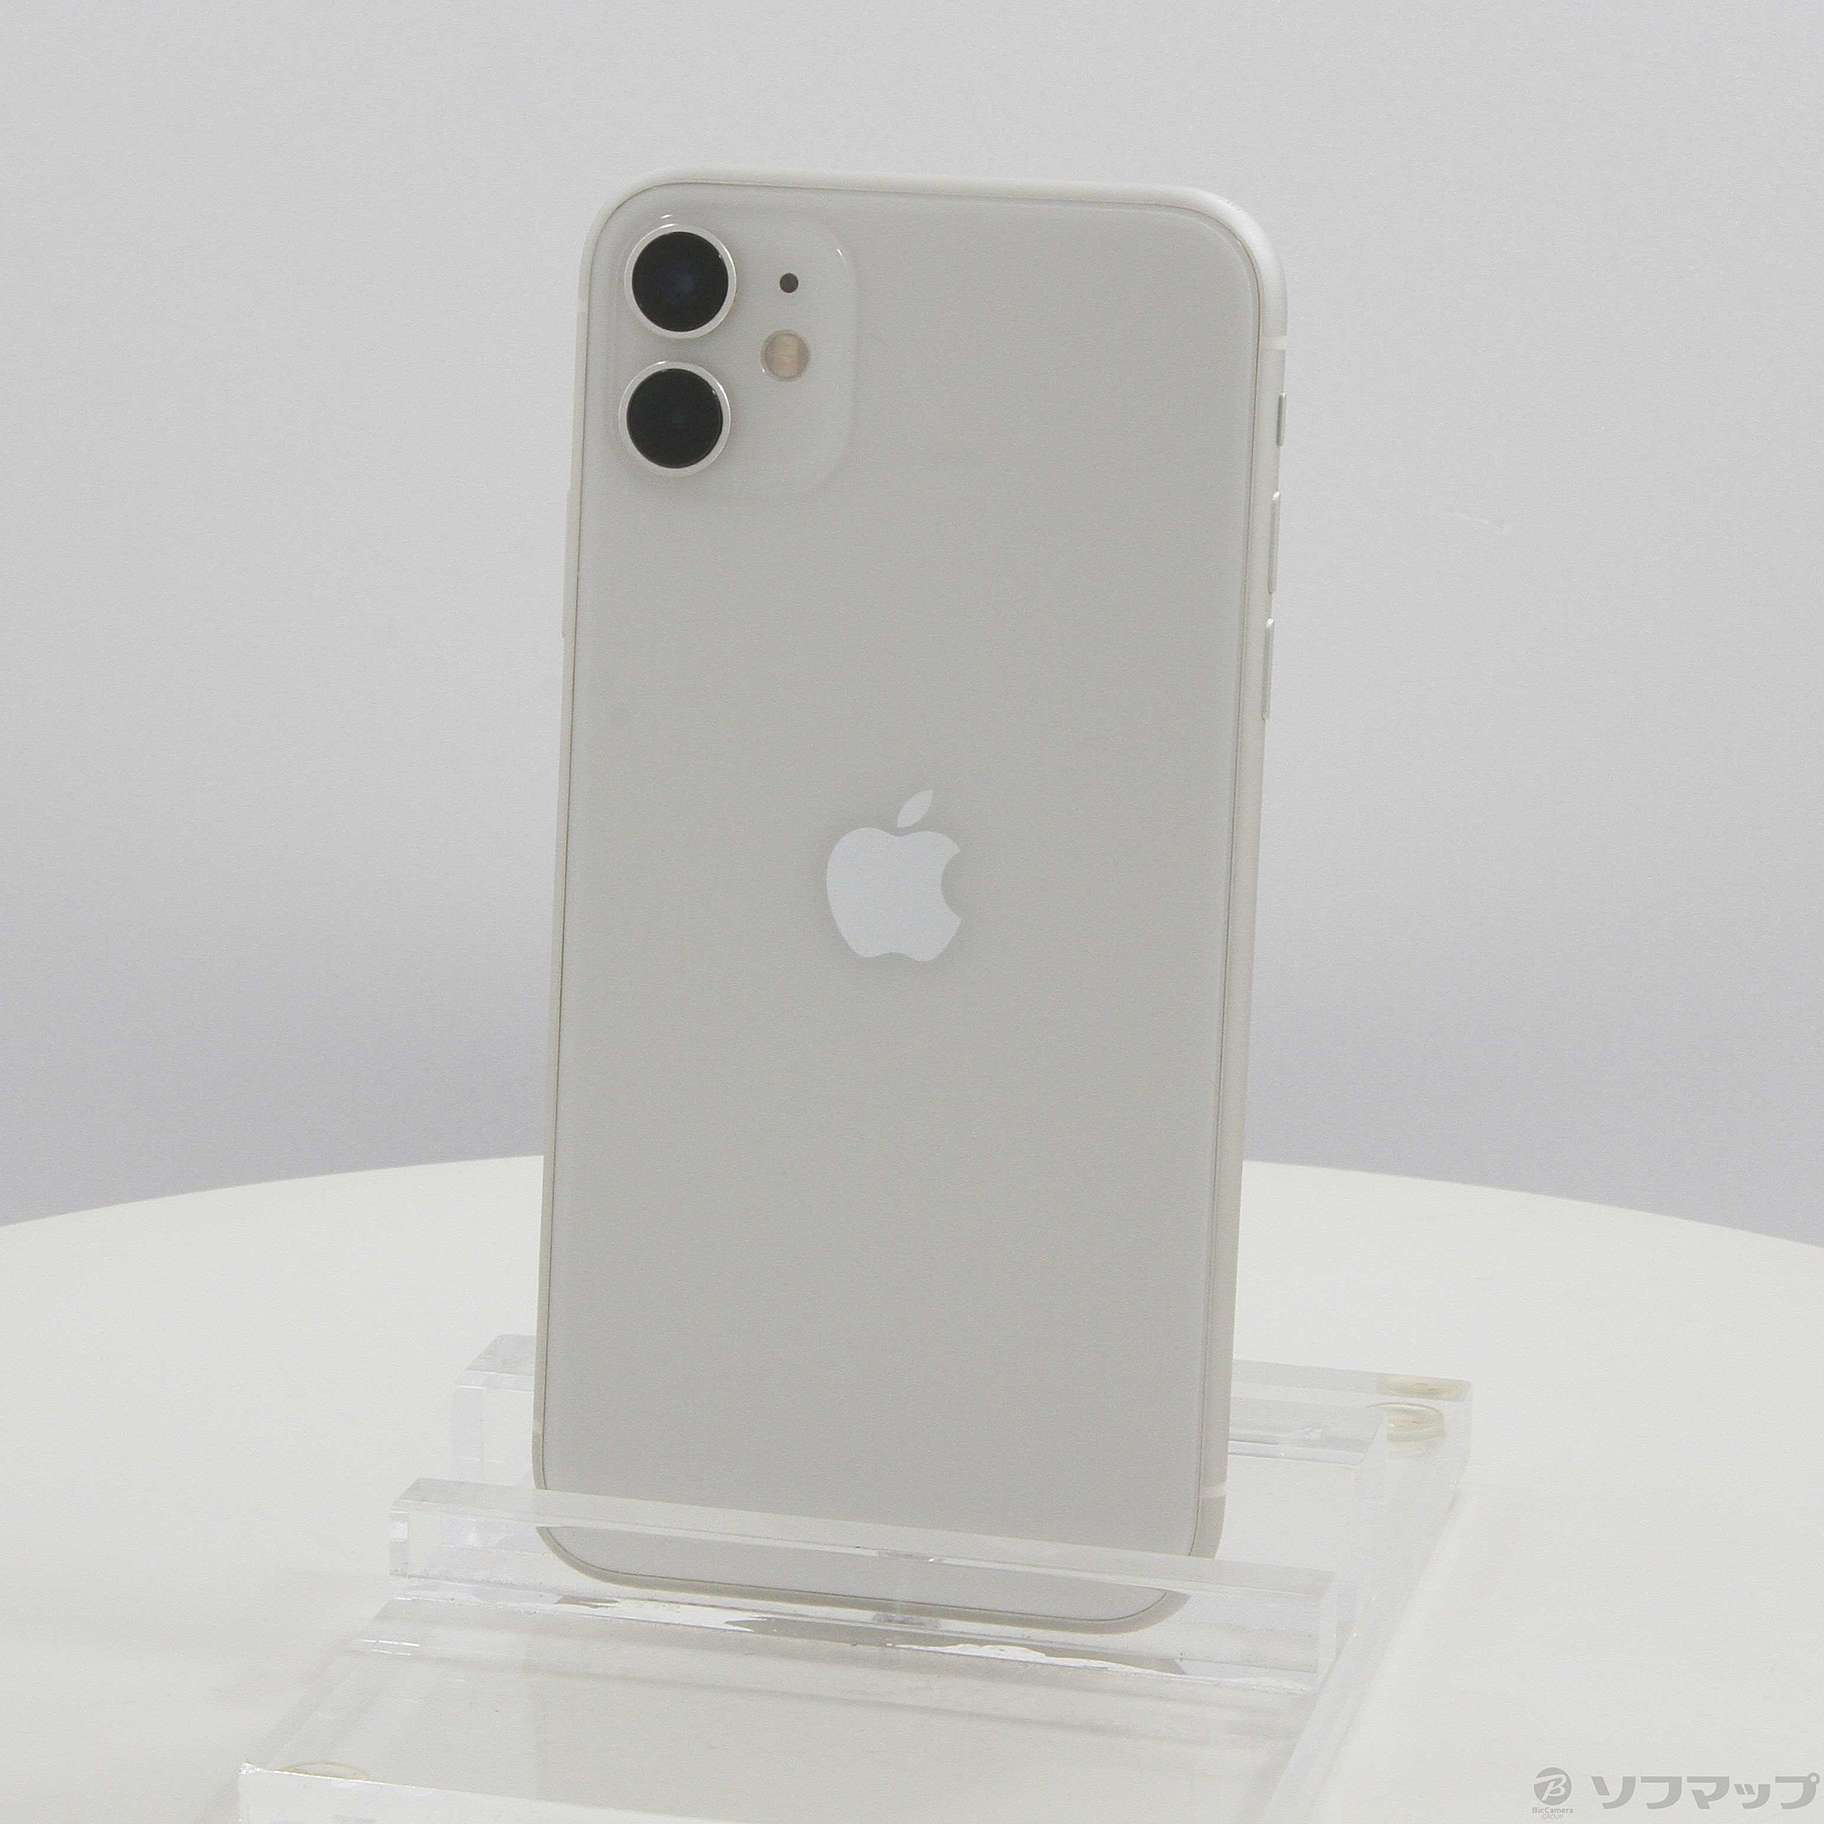 iPhone 11 ホワイト 256 GB SIMフリー - 携帯電話